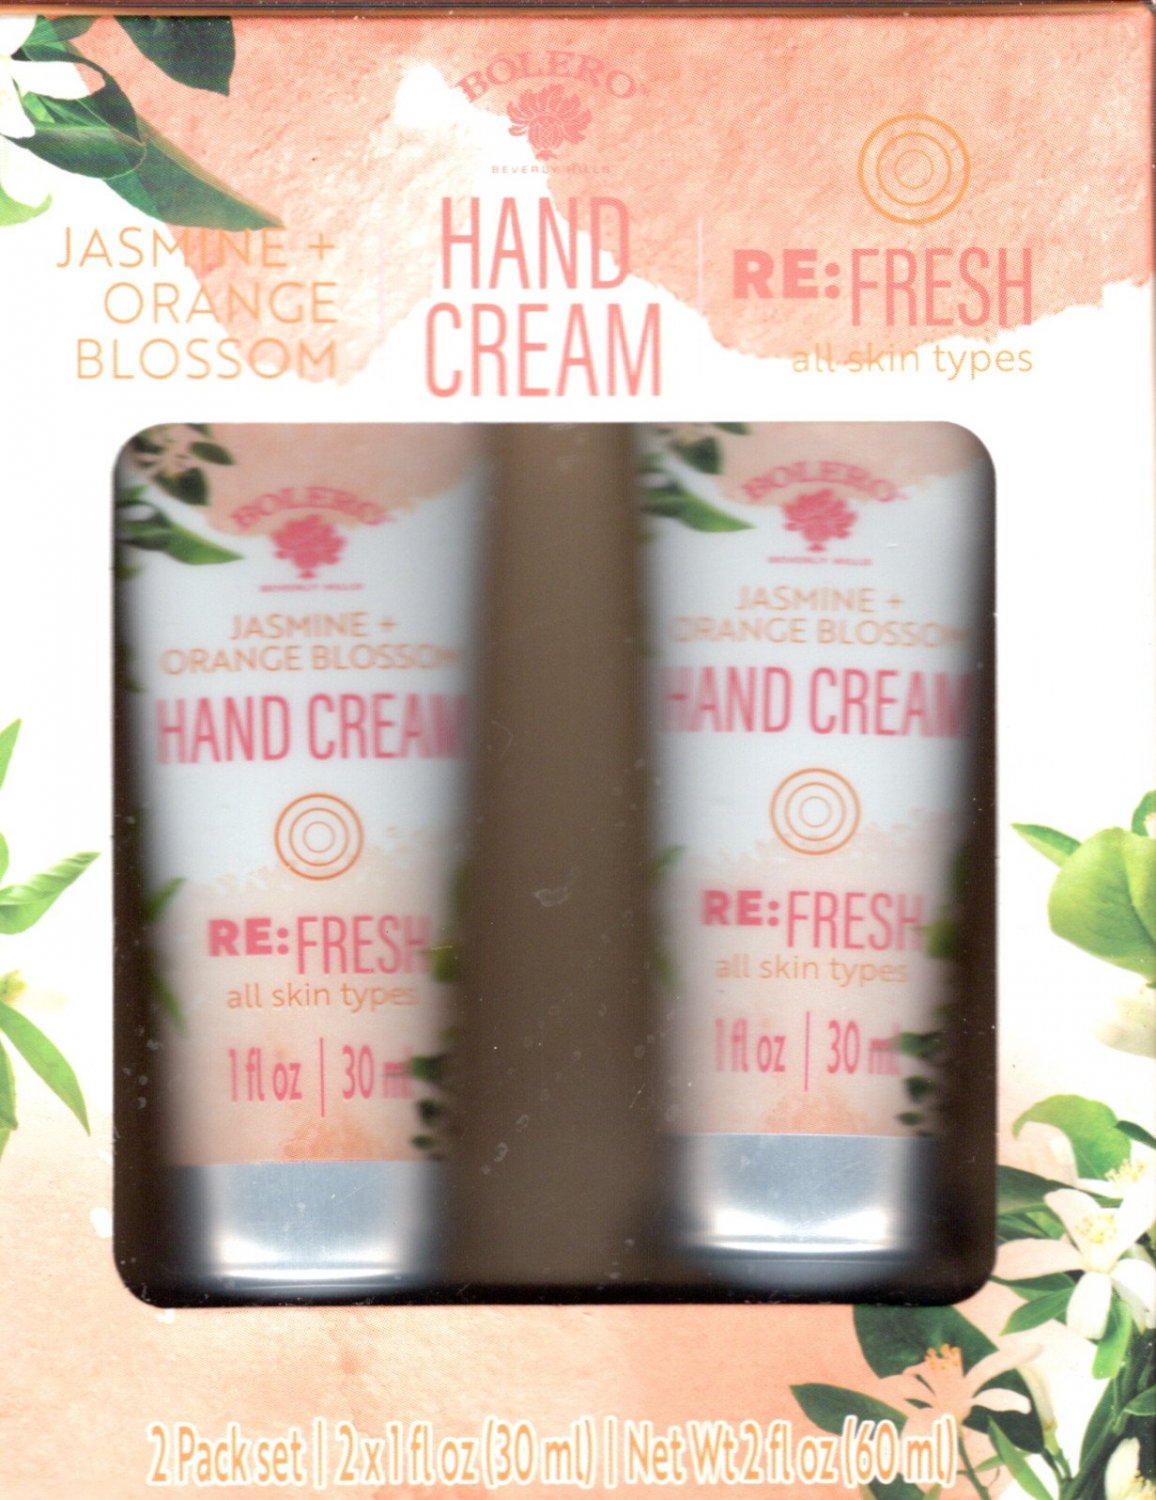 Jasmine + Orange Blossom Hand Cream 2 Pack Set Moisturize 2 x 1fl oz (30ml)